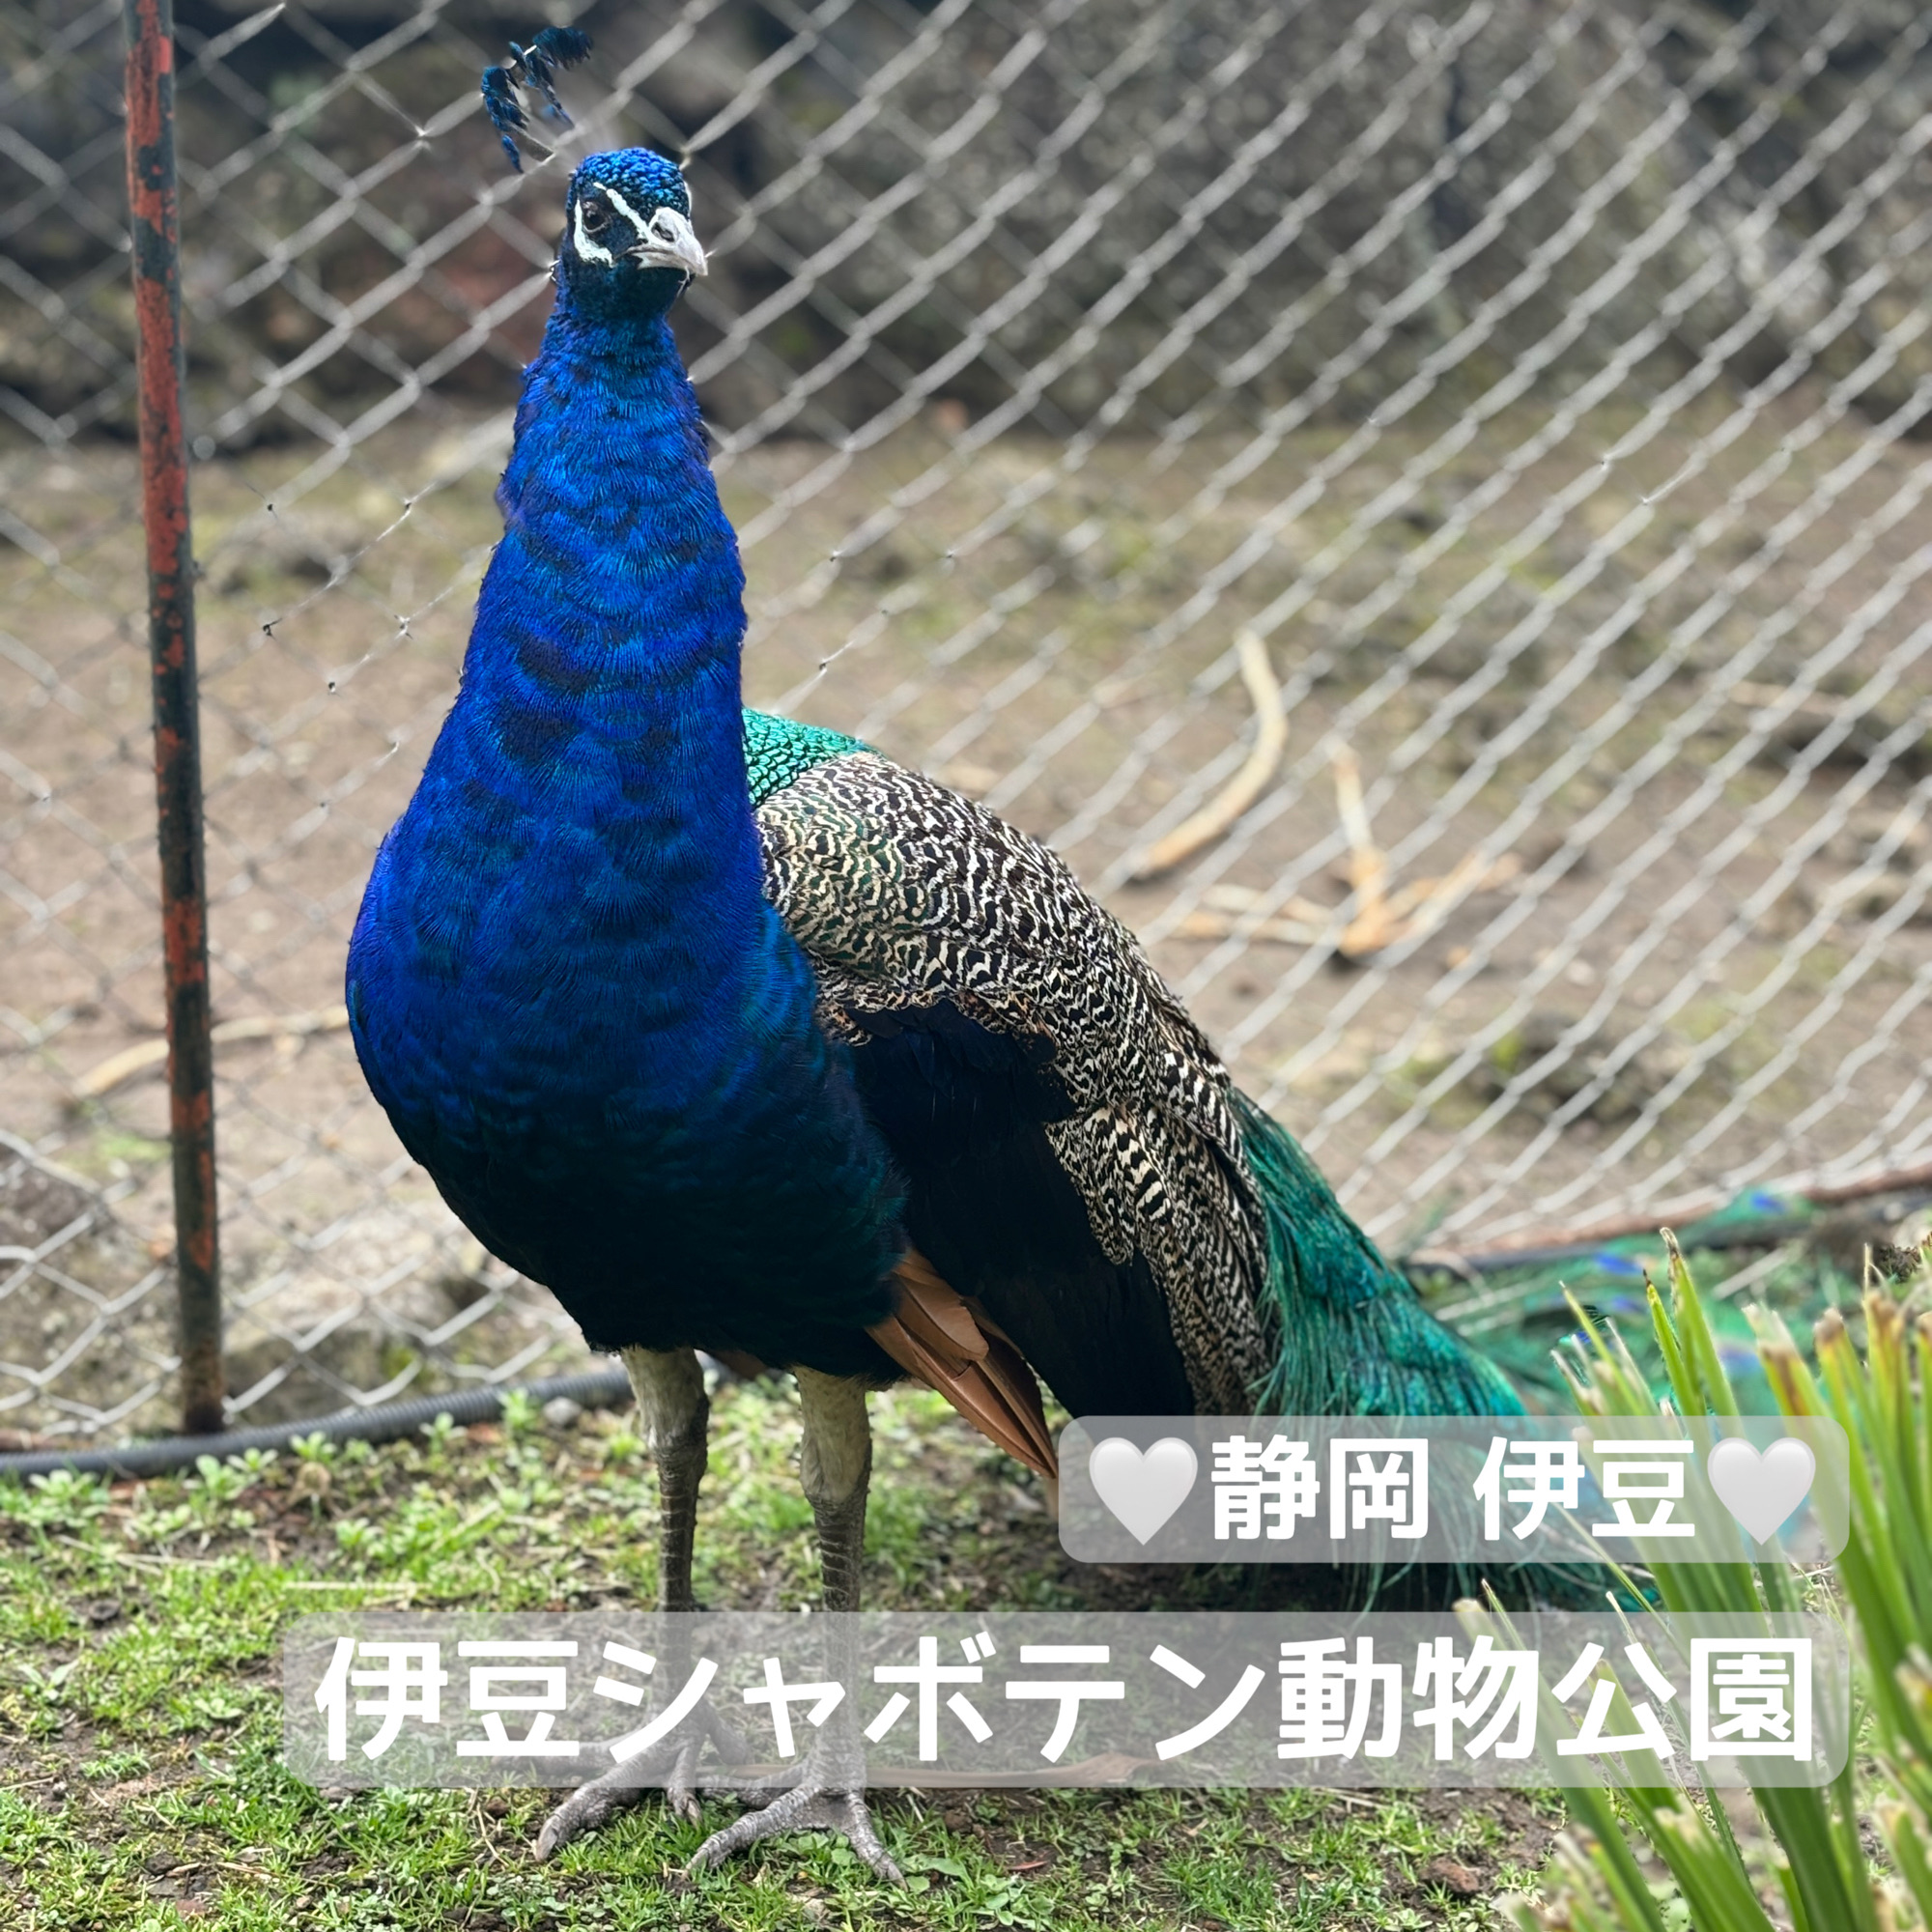 【推荐约会】静冈伊豆 伊豆仙人掌动物园 可爱的动物和多肉植物可以零距离接触